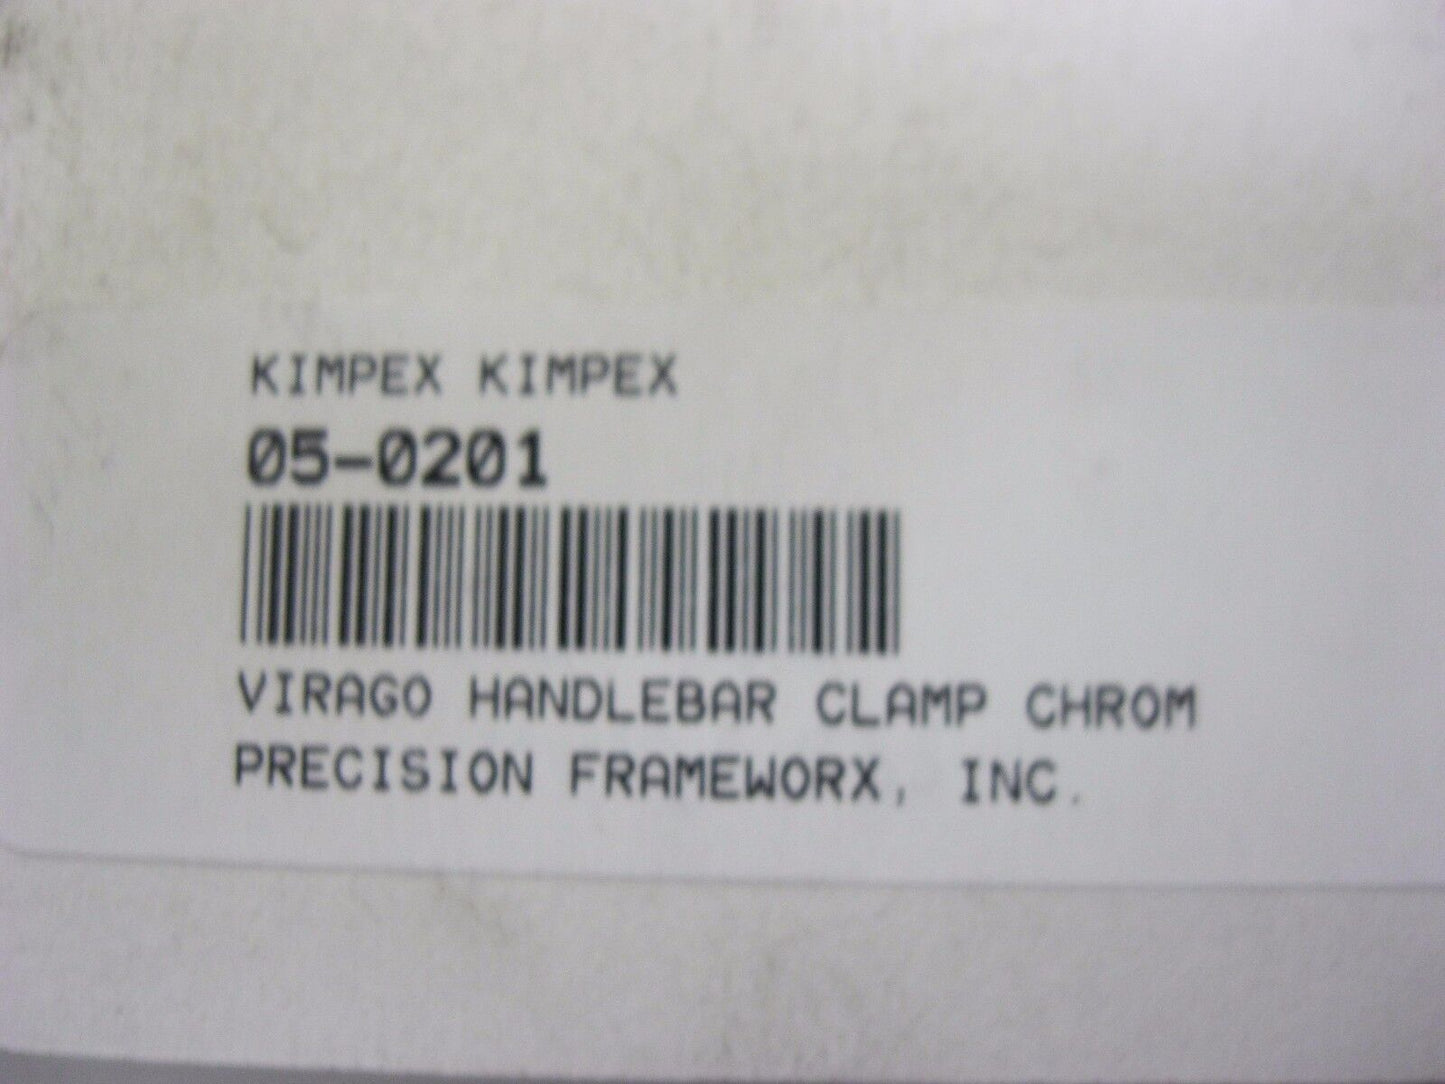 YAMAHA VIRAGO SMOOTH CHROME 1 PIECE HANDLE BAR TOP CLAMP KIMPEX   05-0201